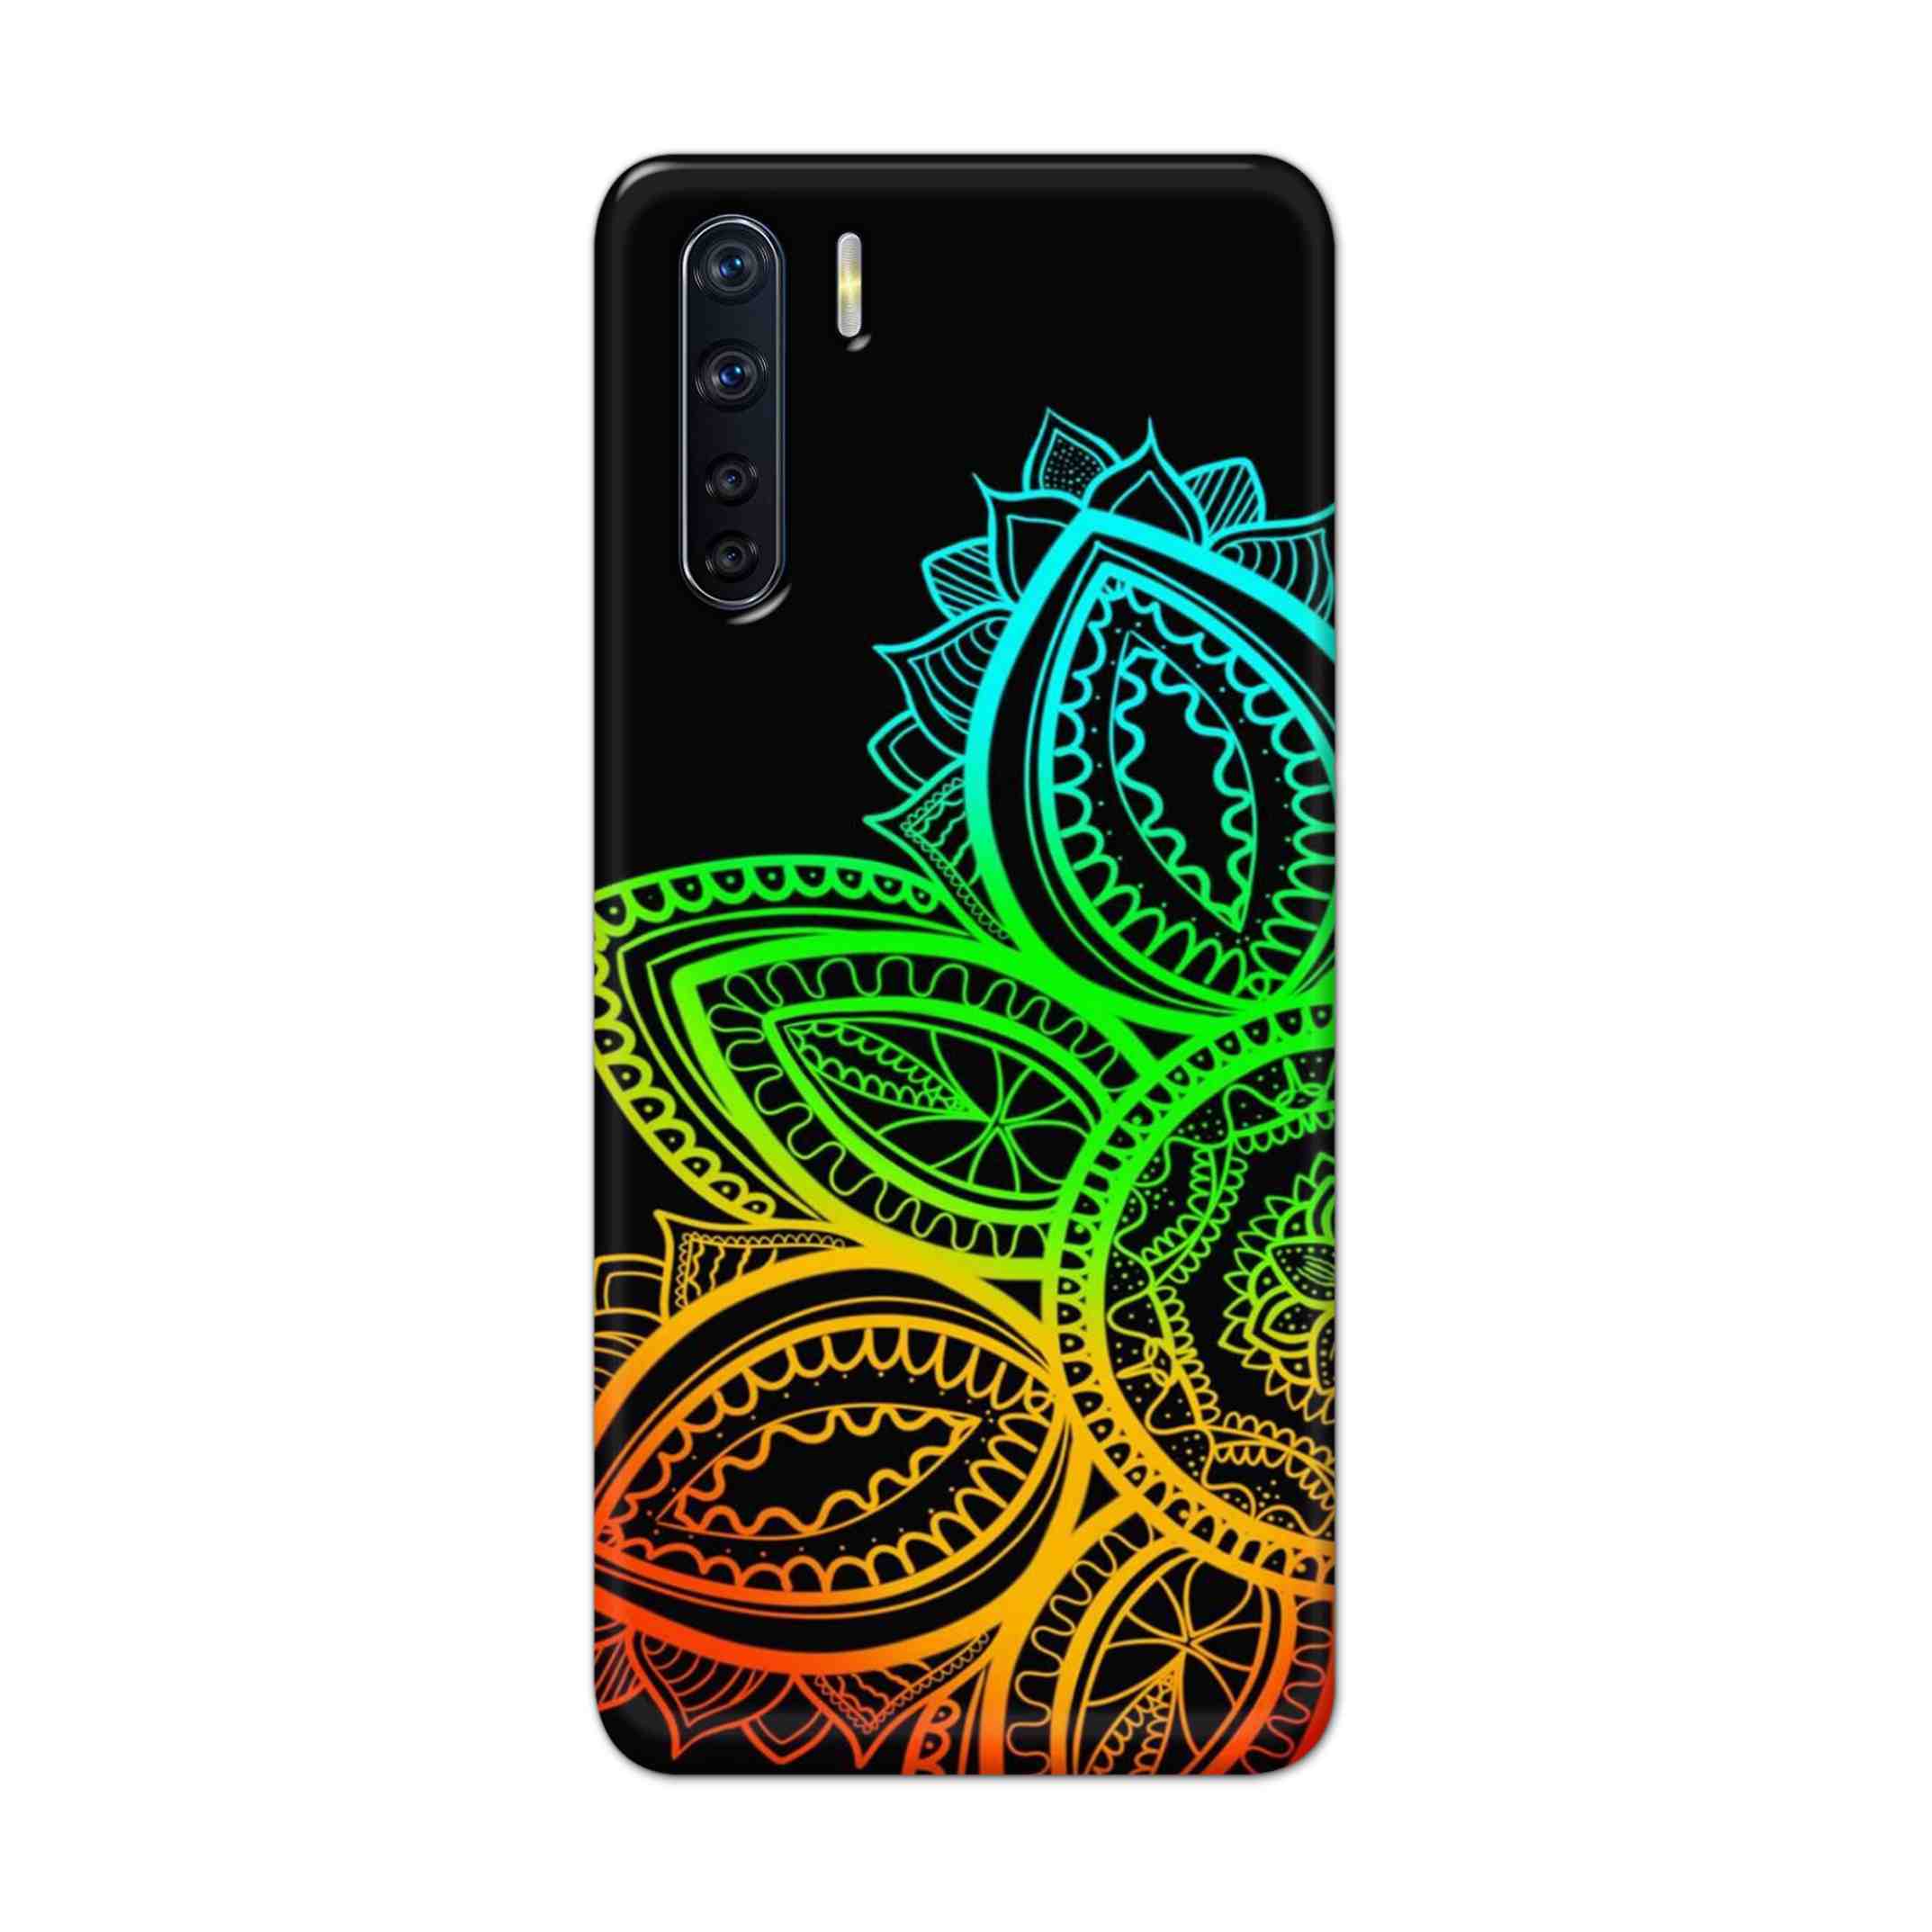 Buy Neon Mandala Hard Back Mobile Phone Case Cover For OPPO F15 Online